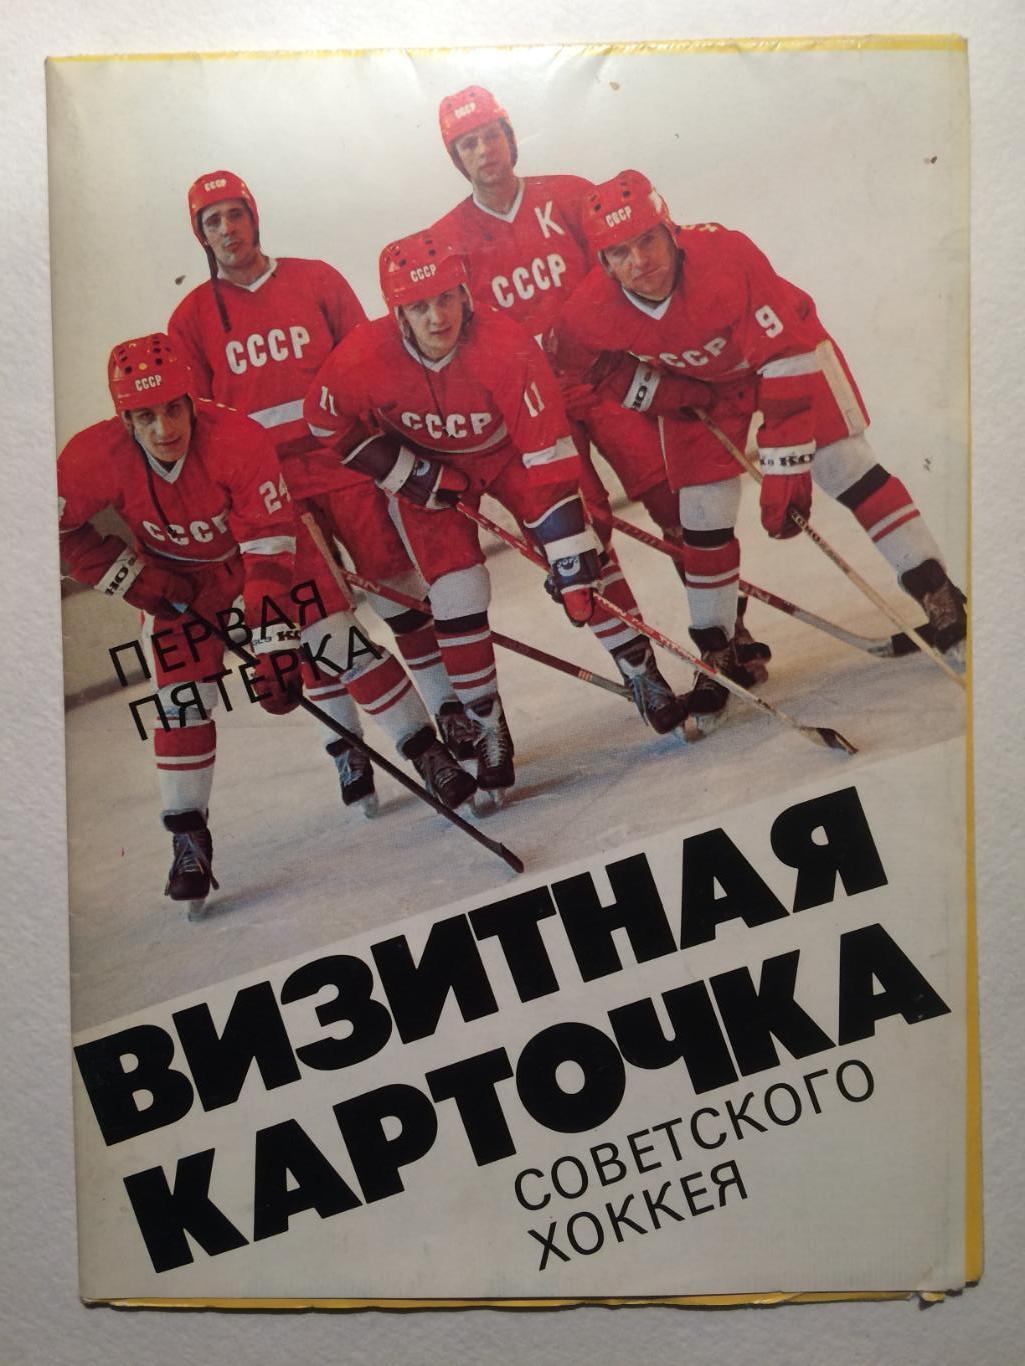 Буклет.Визитная карточка Советского хоккея 1986